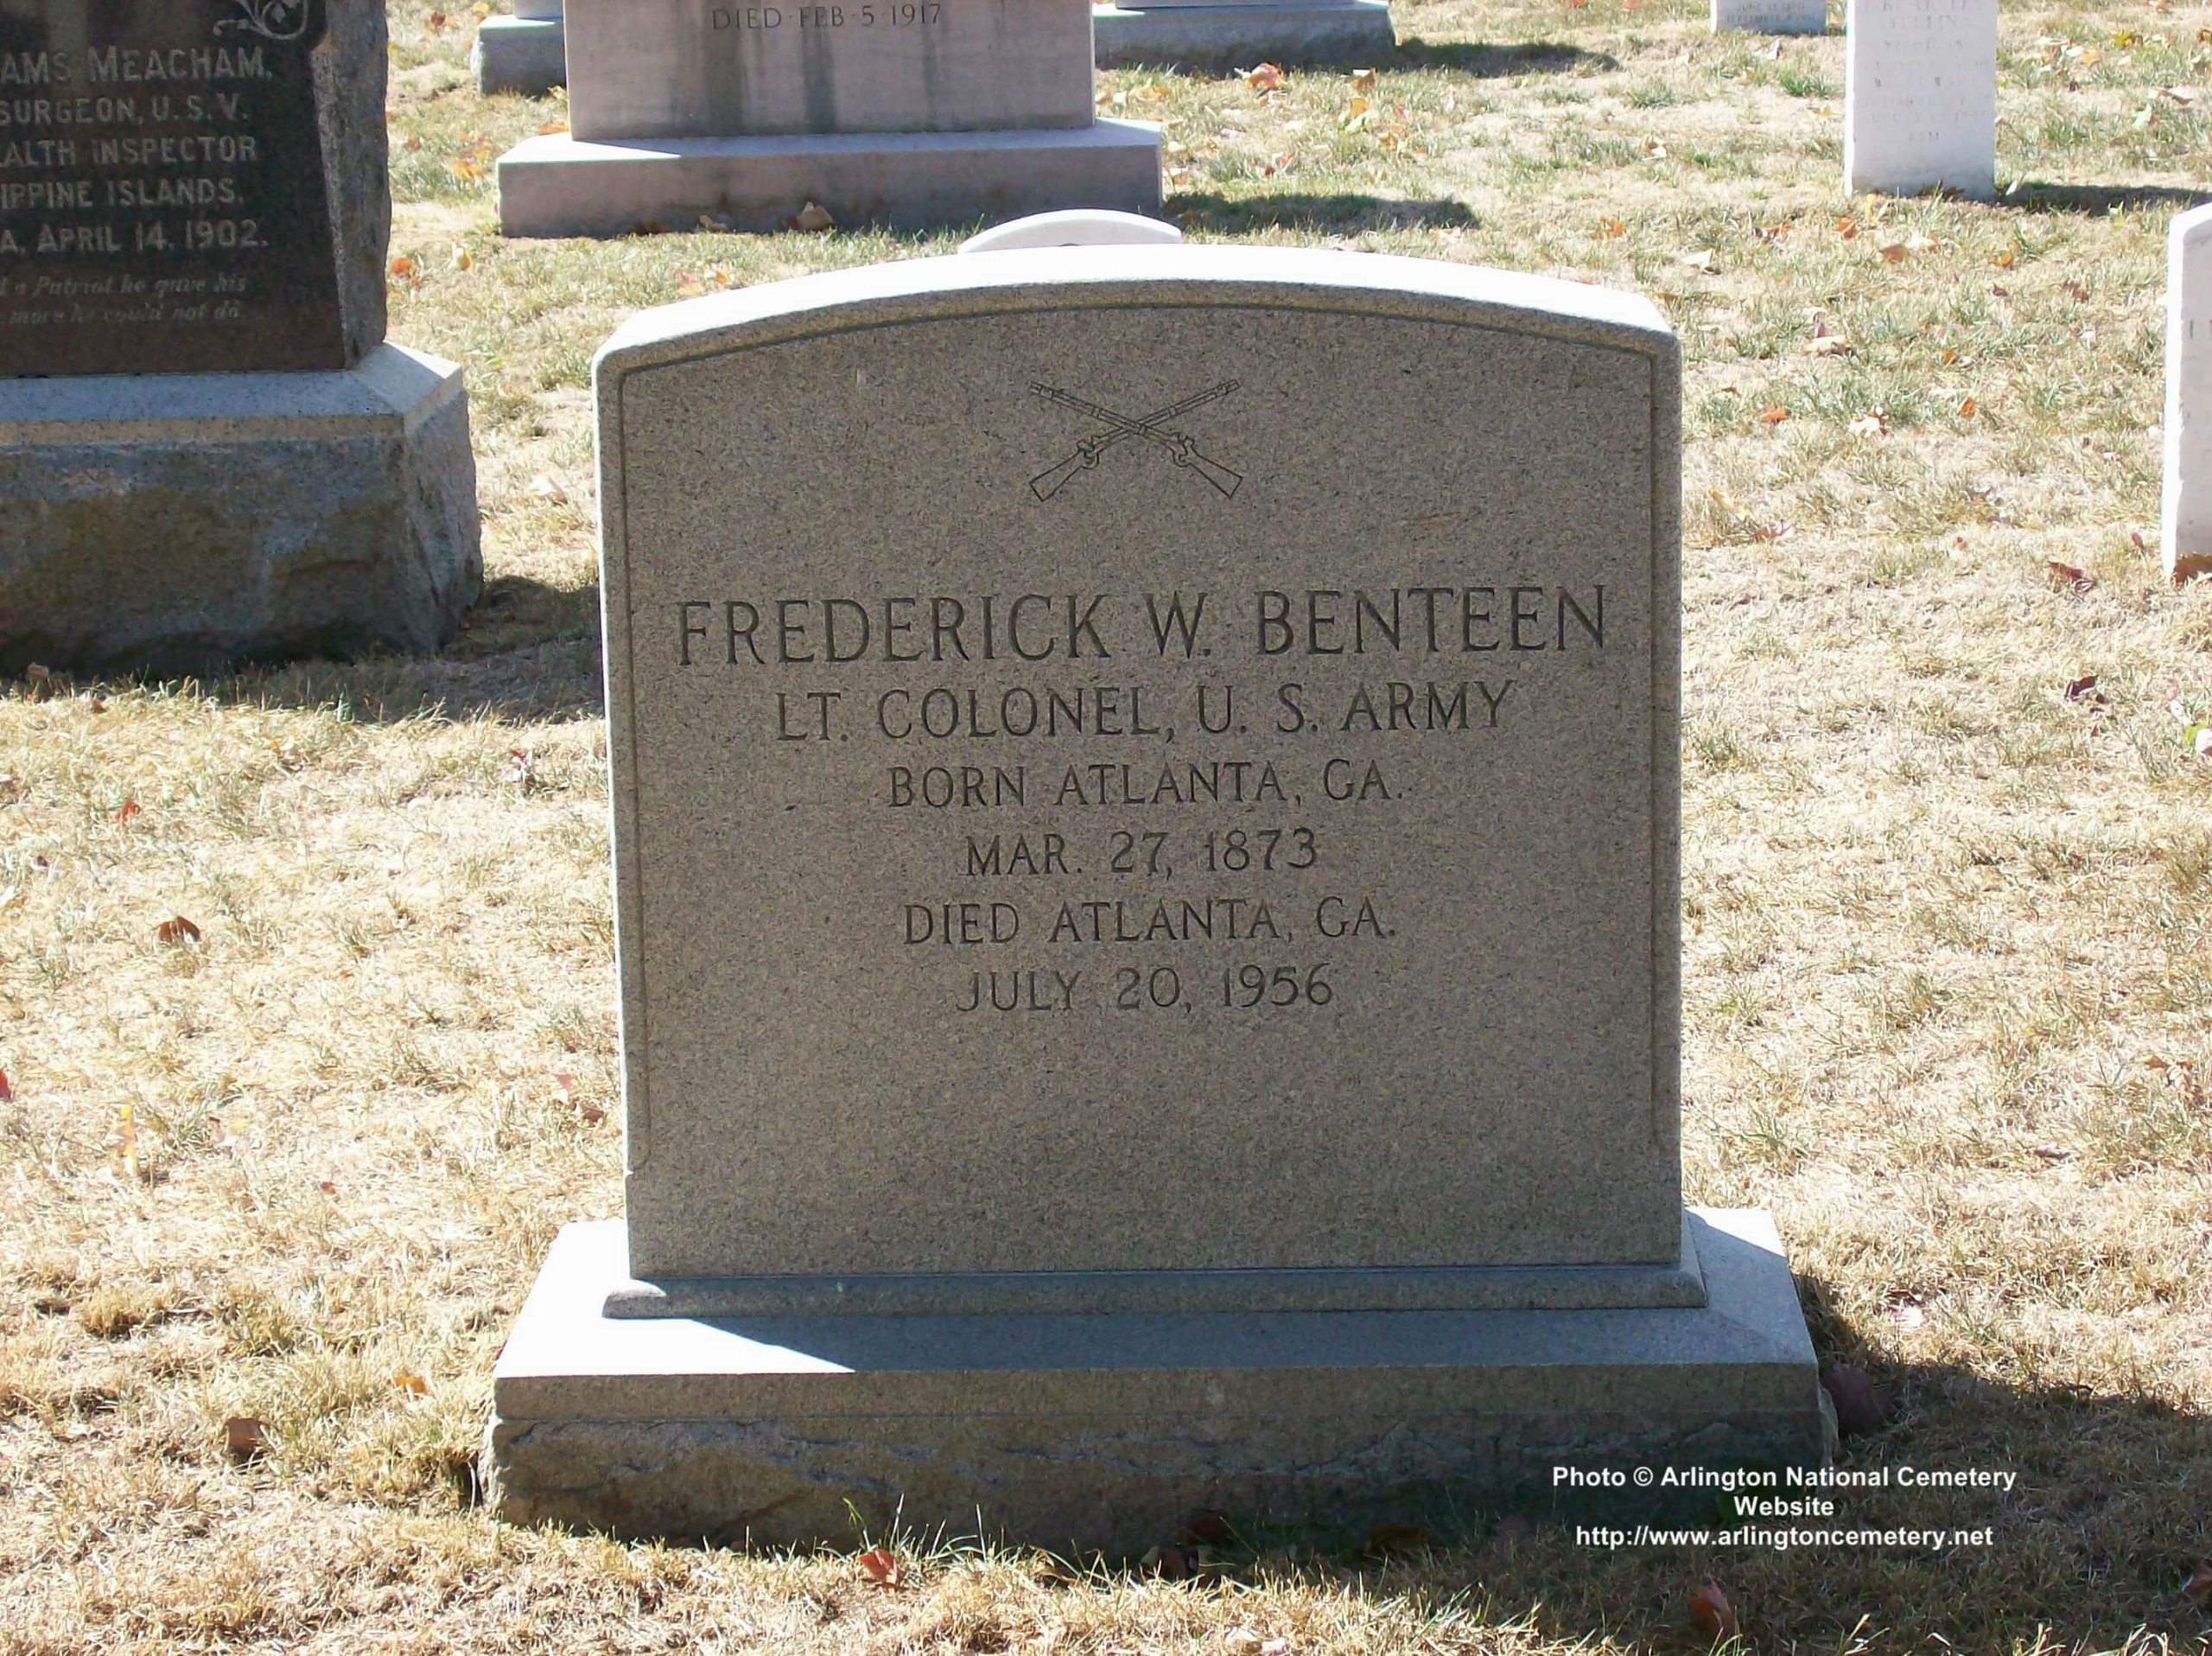 fwbenteen-gravesite-photo-october-2007-001